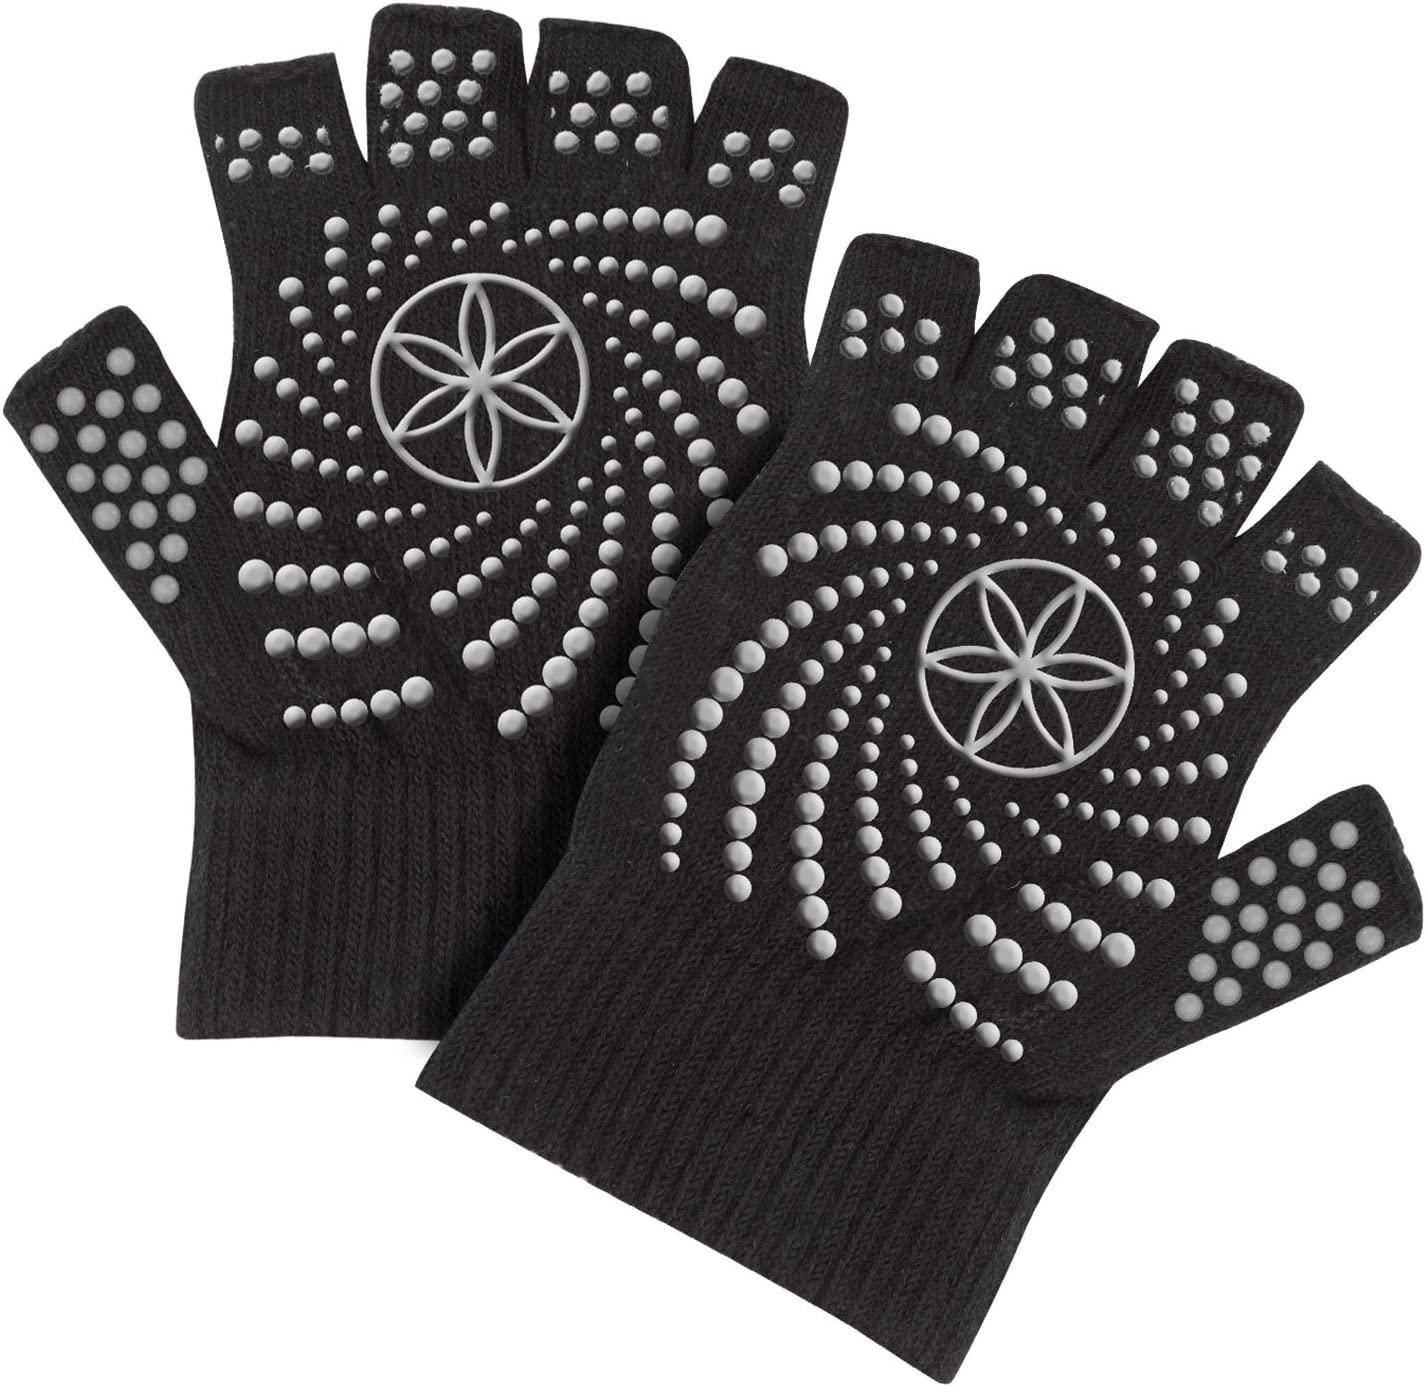 Gaiam Grippy Yoga Gloves, Black/Grey